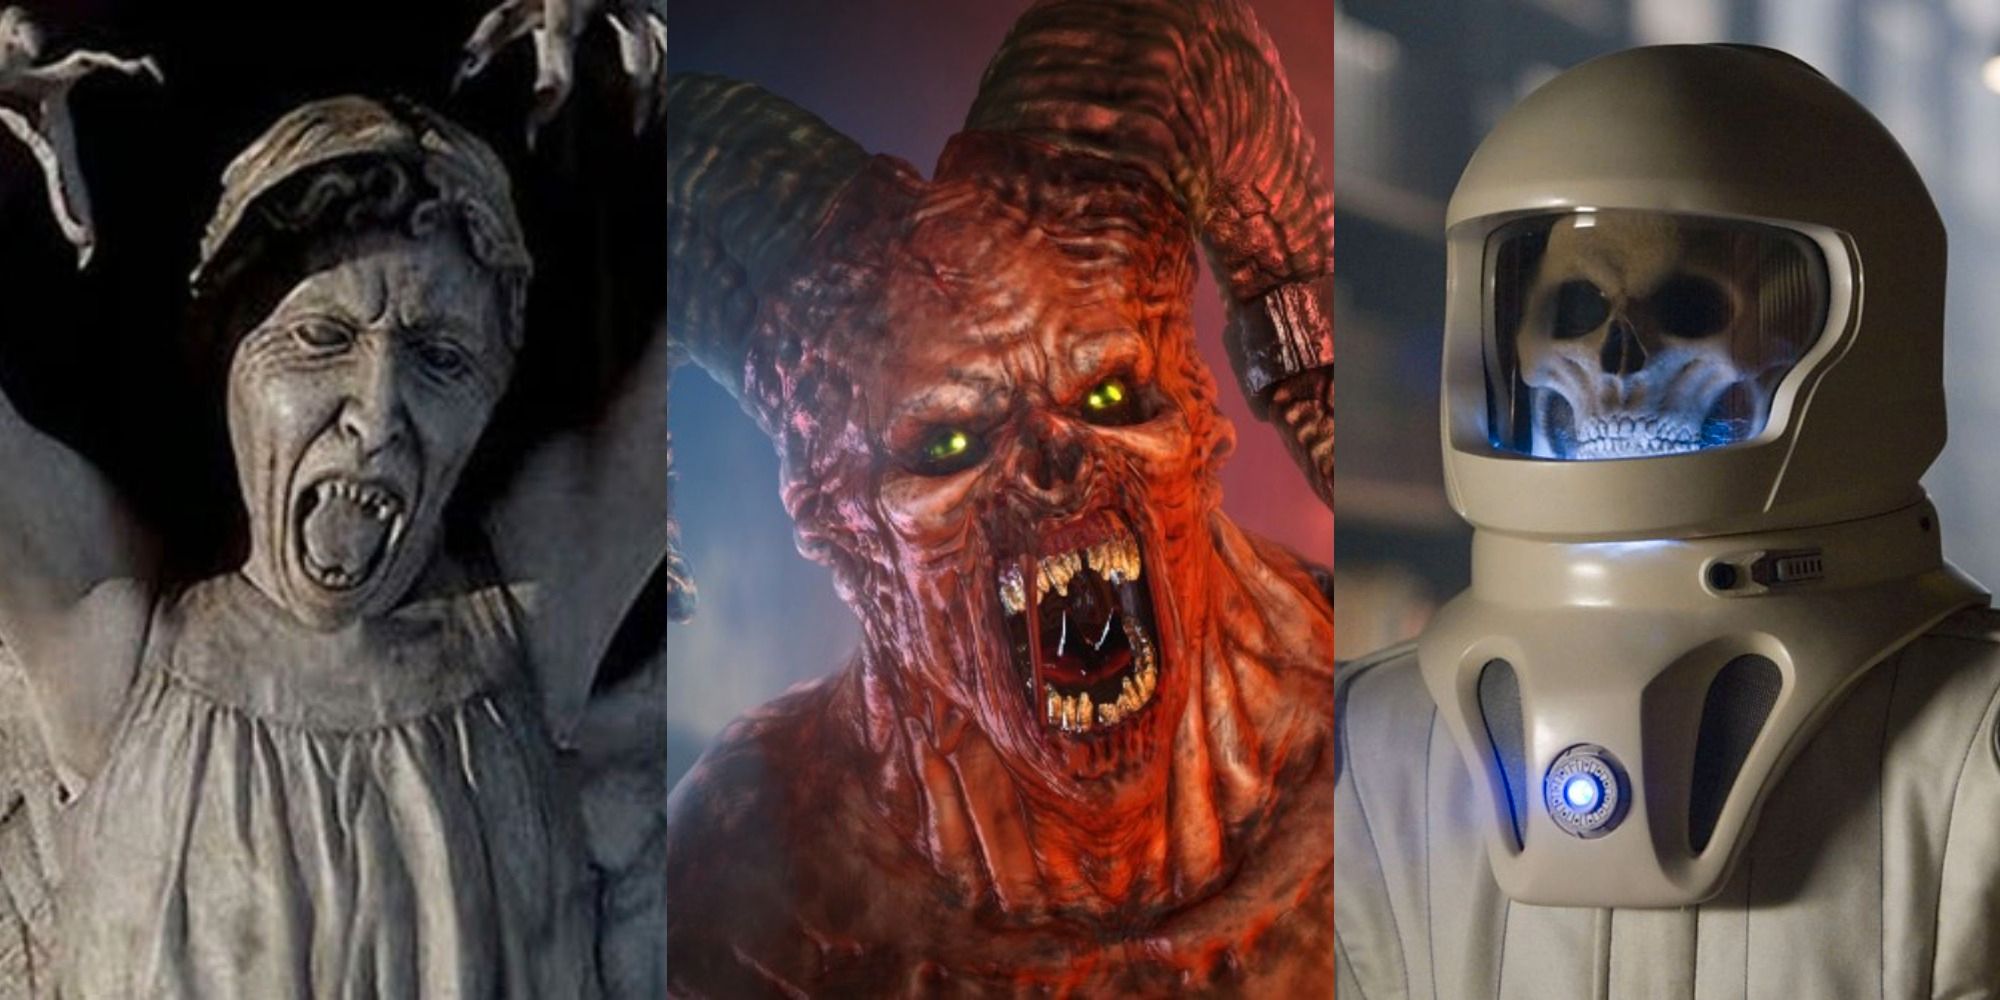 Doctor Who: Los 10 extraterrestres más aterradores de The Show, según Reddit